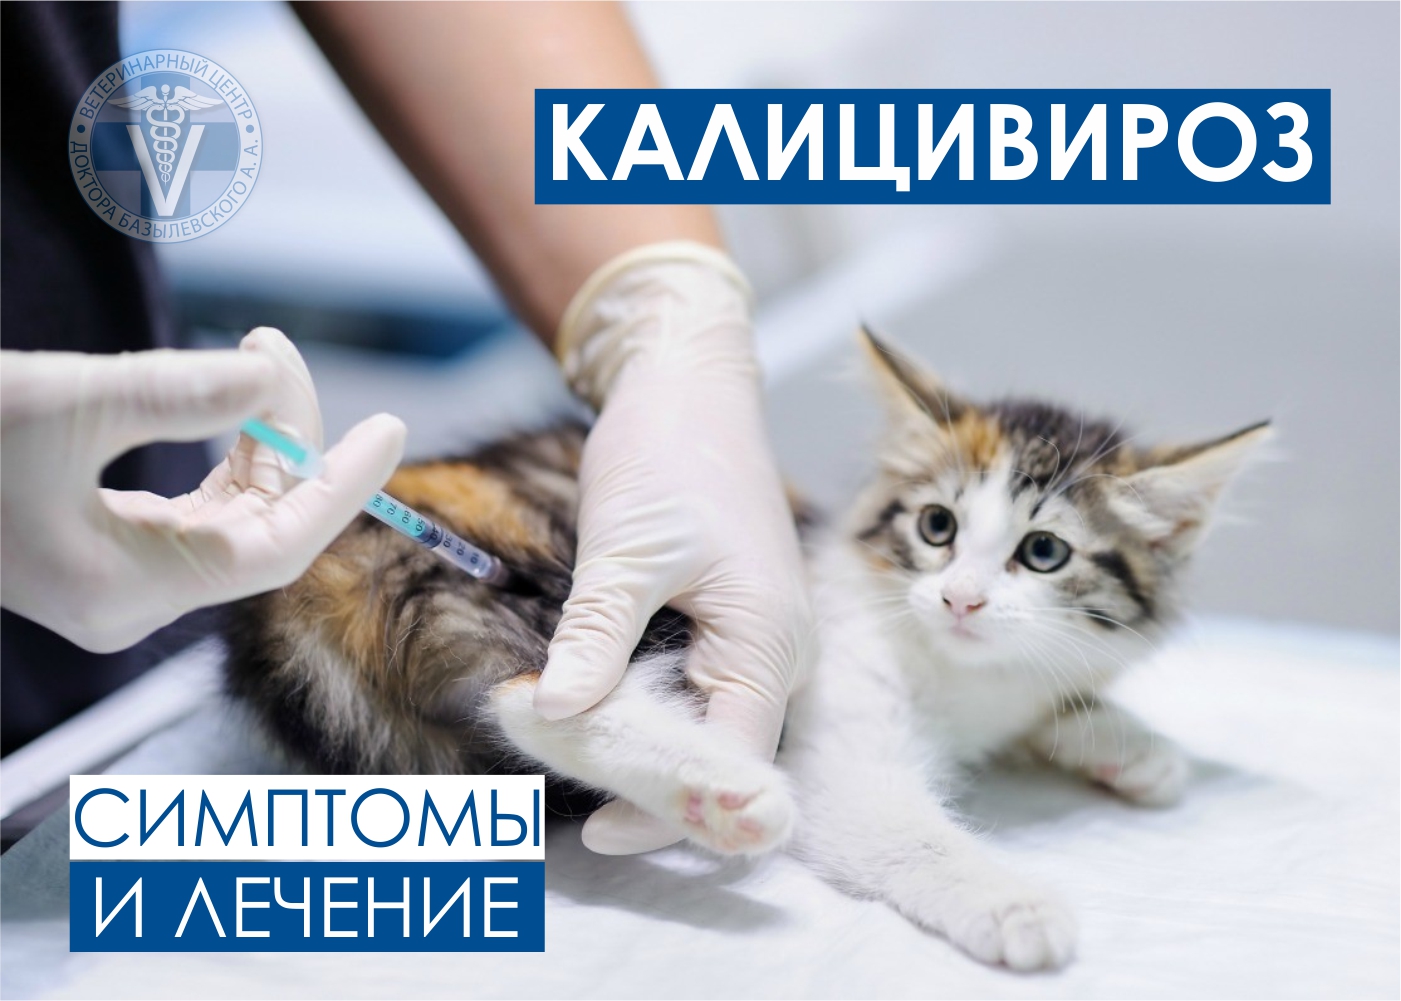 Вирусный ринотрахеит - симптомы, лечение и профилактика у кошек